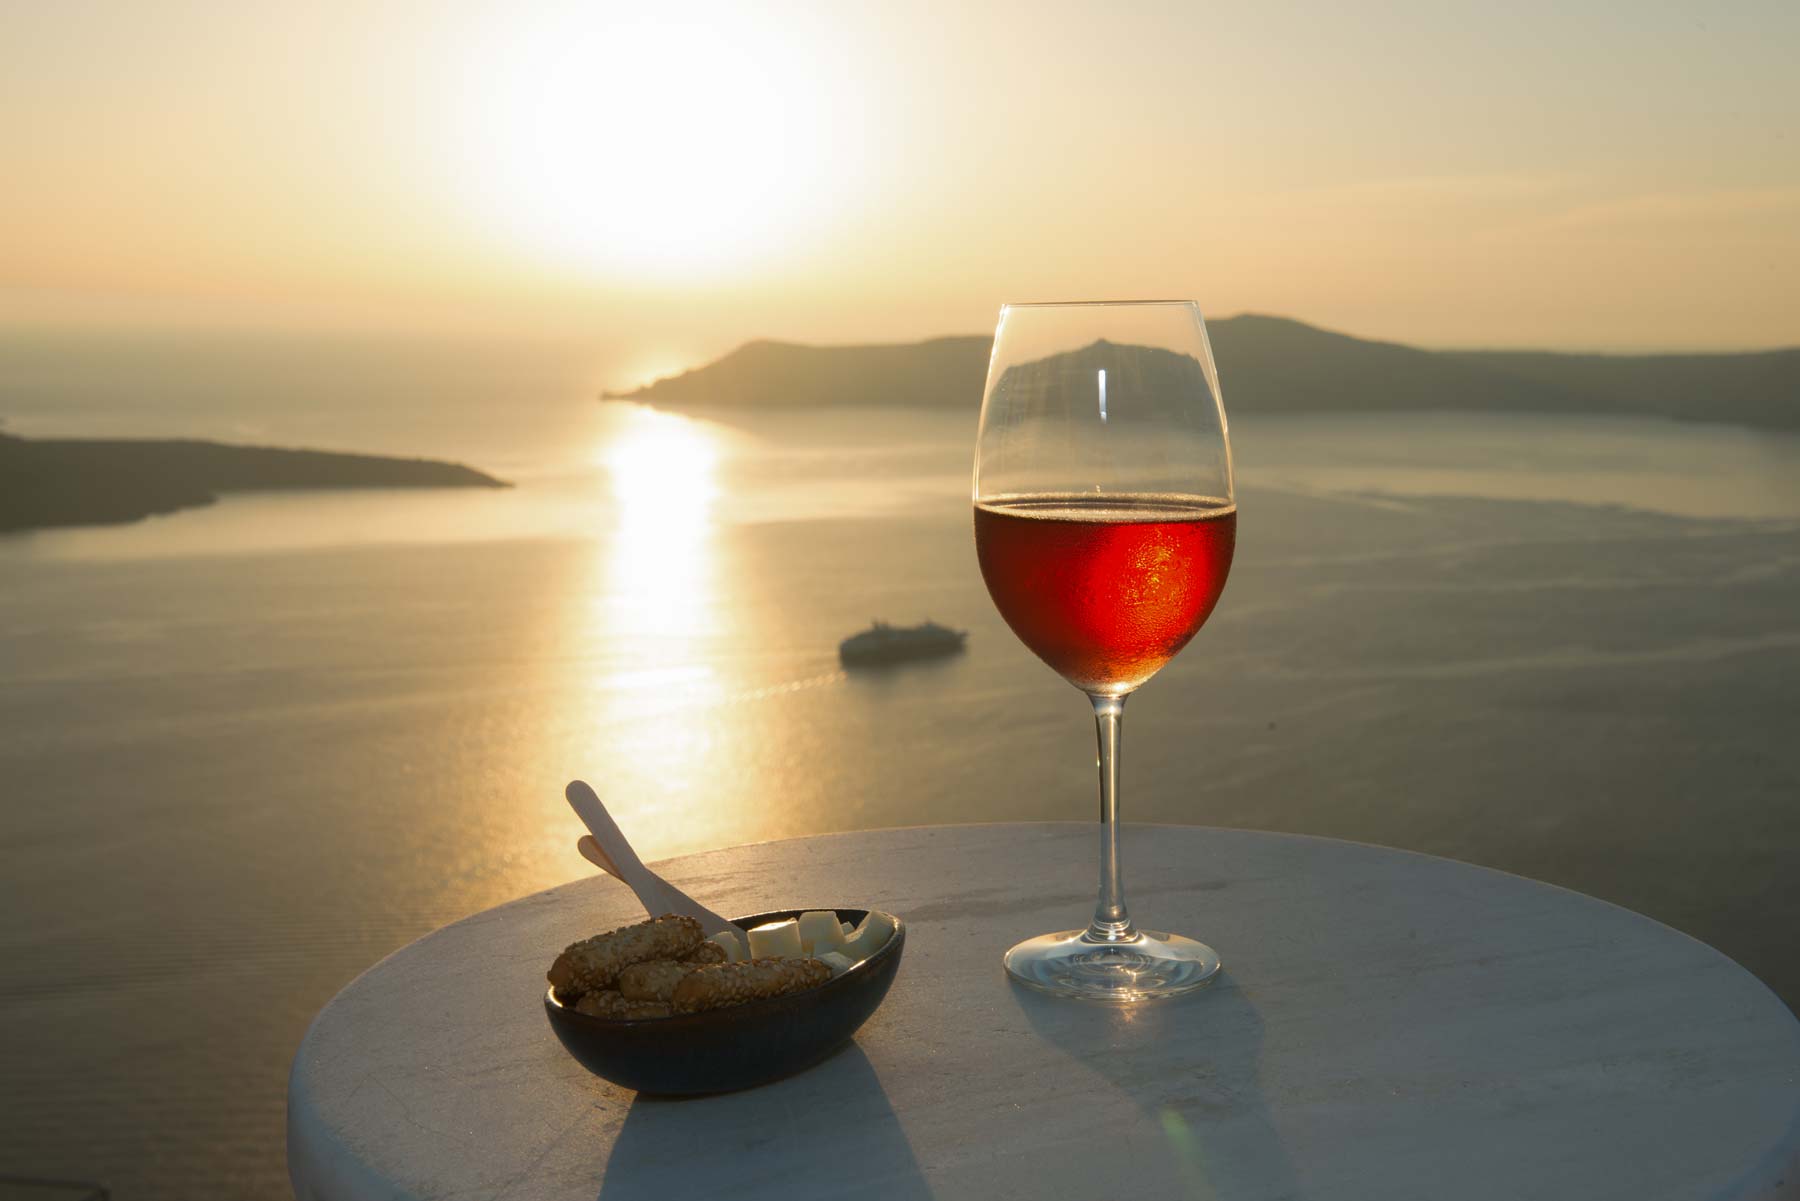 Ελληνικό νησί στα καλύτερα μέρη της Ευρώπης για τους λάτρεις του κρασιού